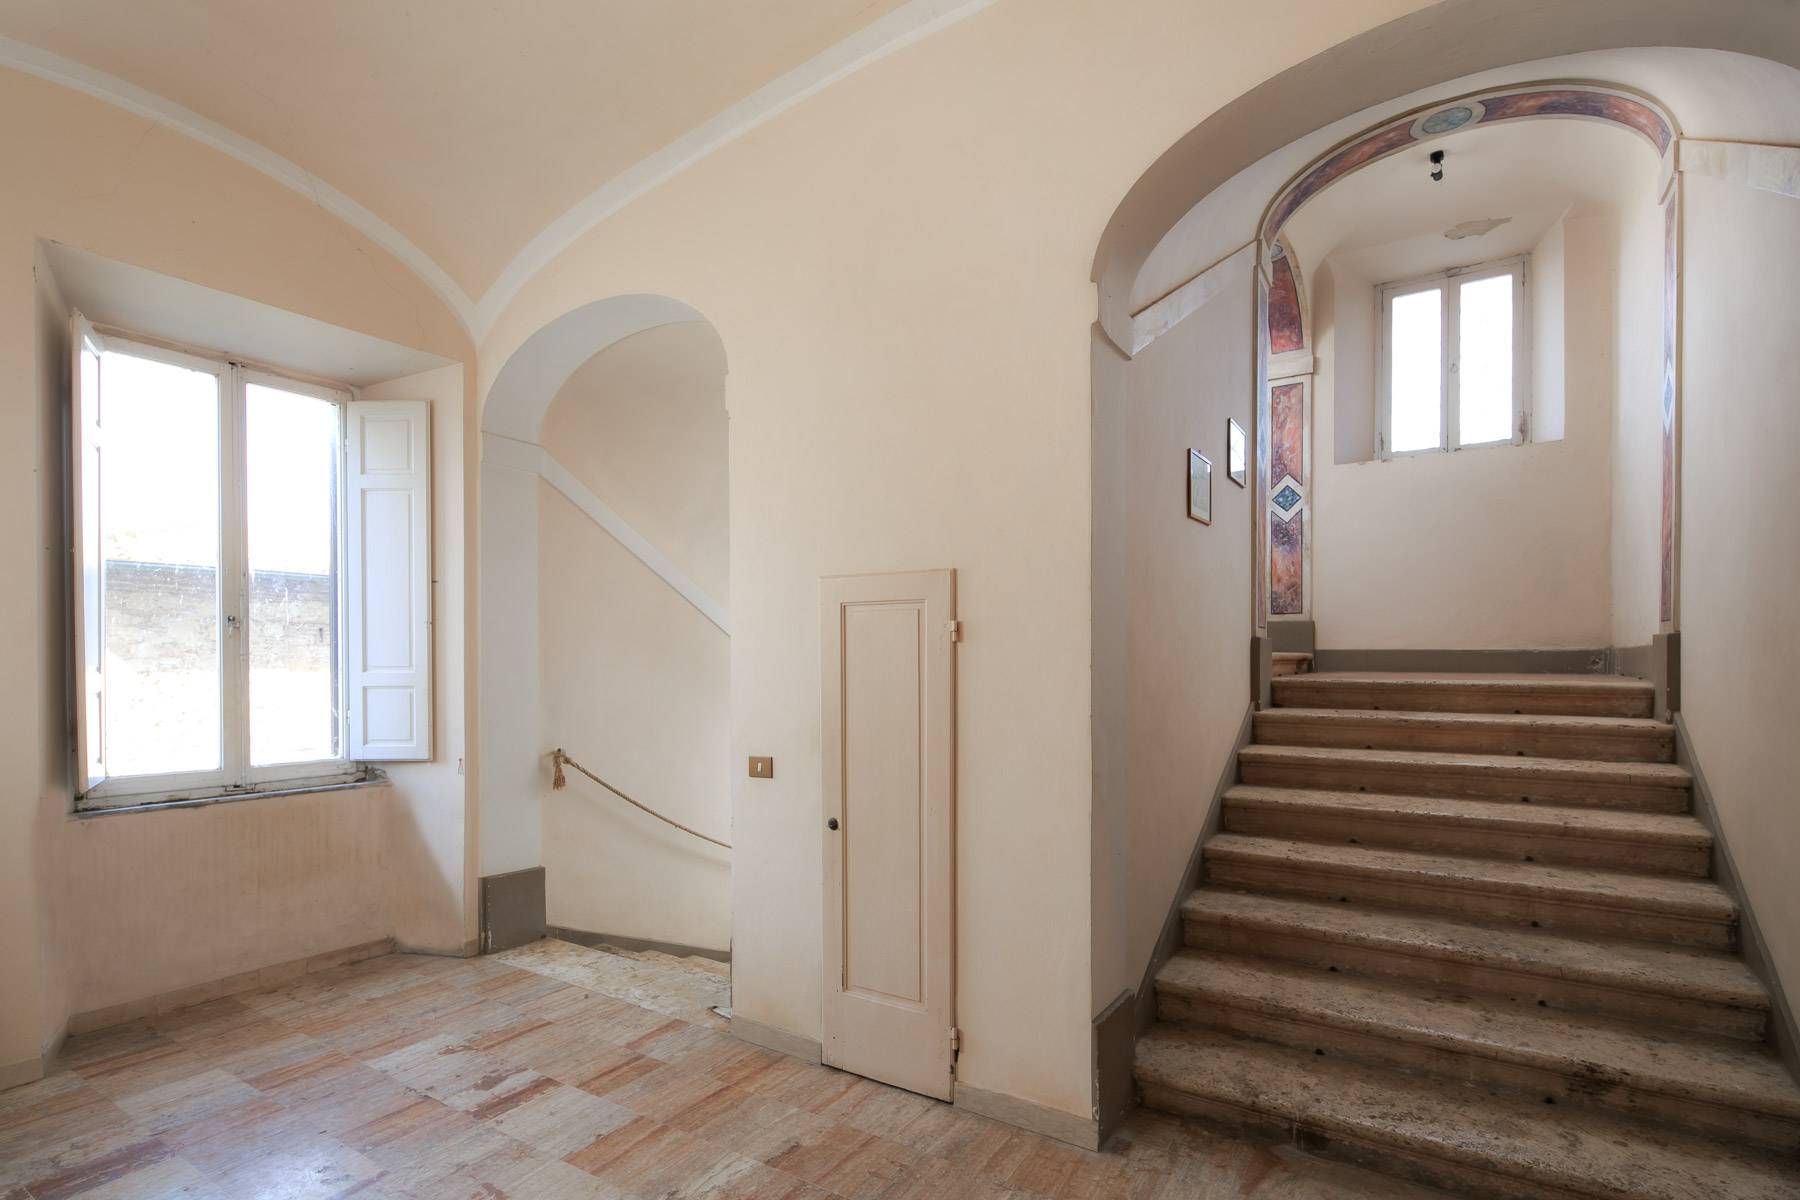 Villa in Vendita a Montepulciano: 5 locali, 2400 mq - Foto 18